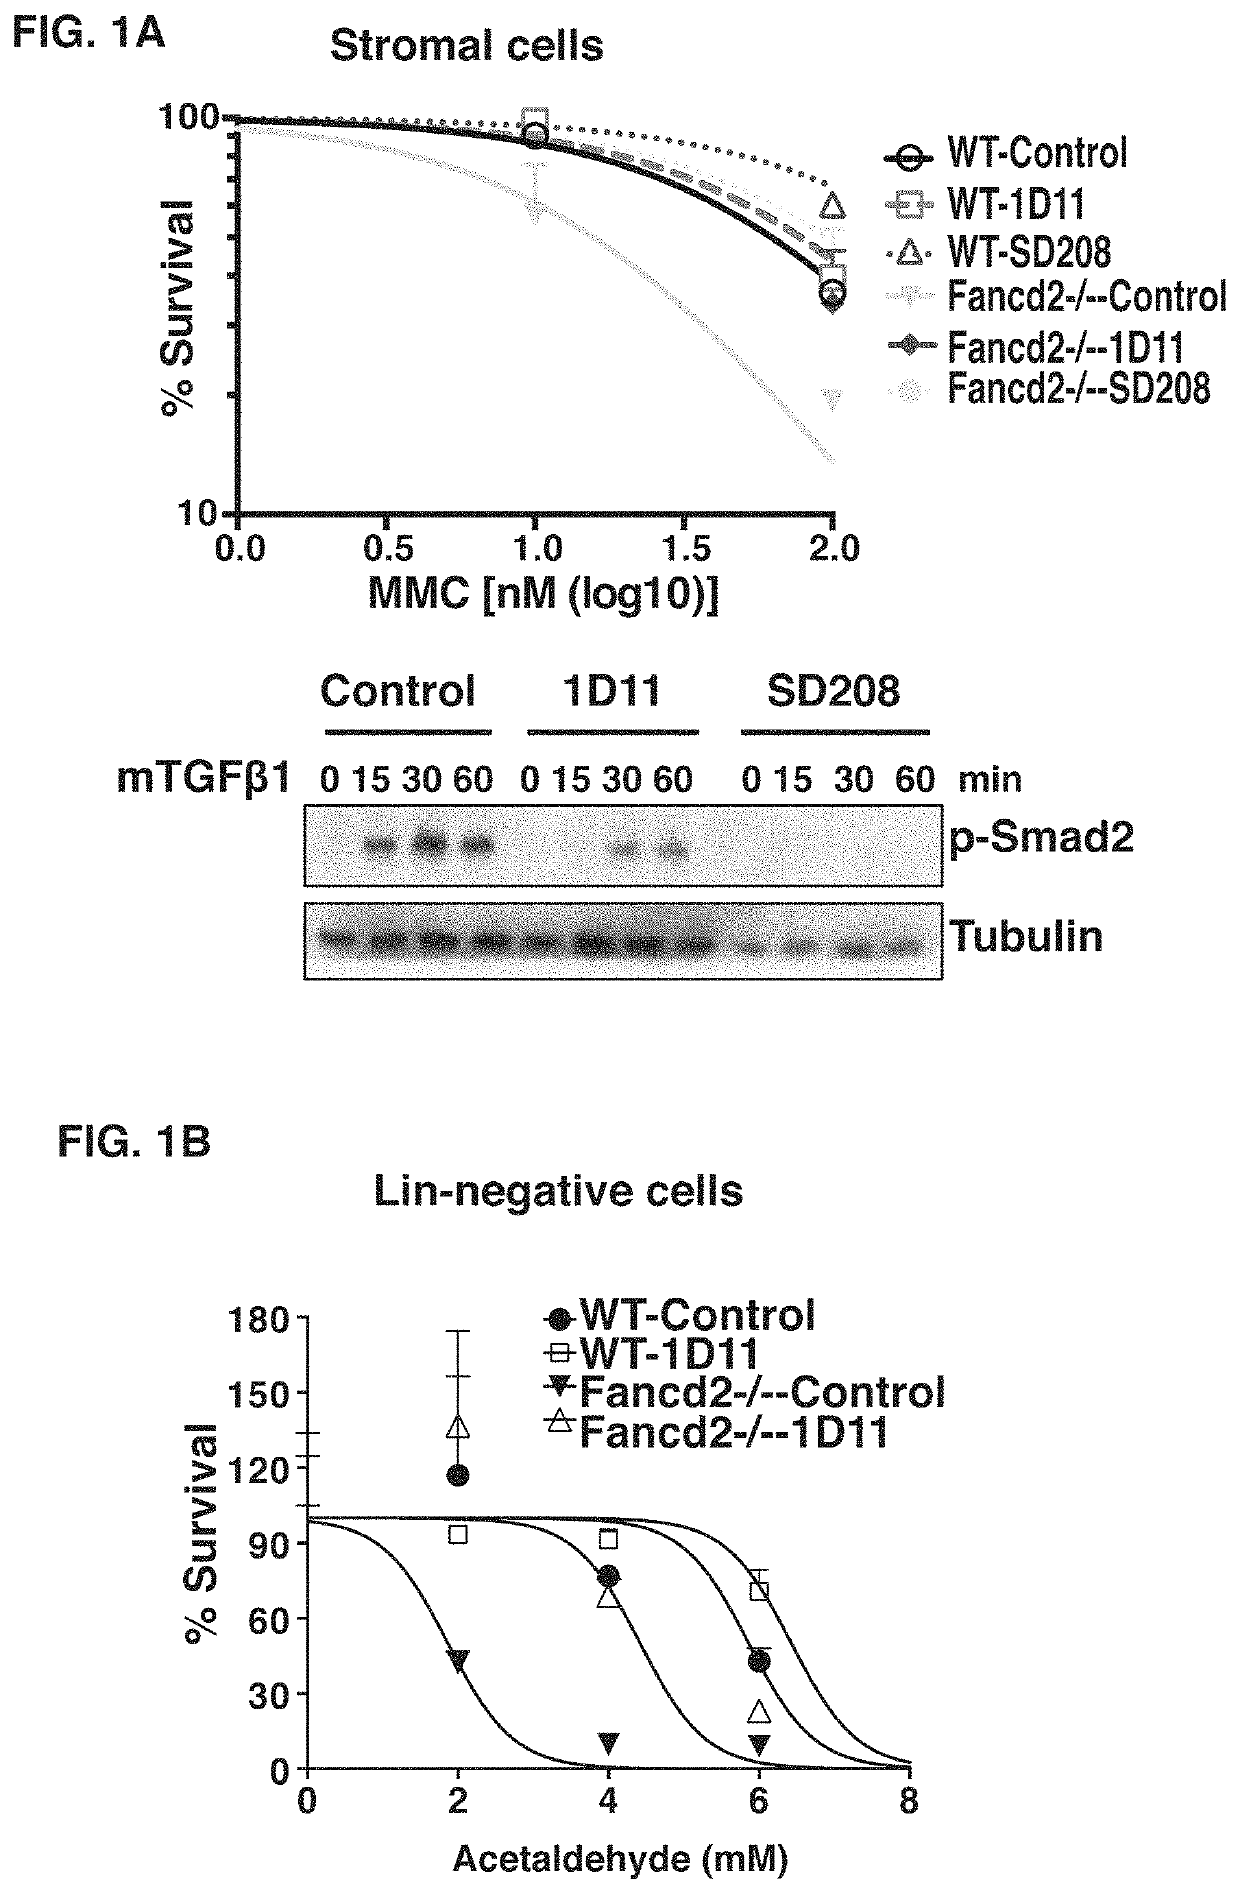 Anti-TGF-beta antibody for the treatment of fanconi anemia